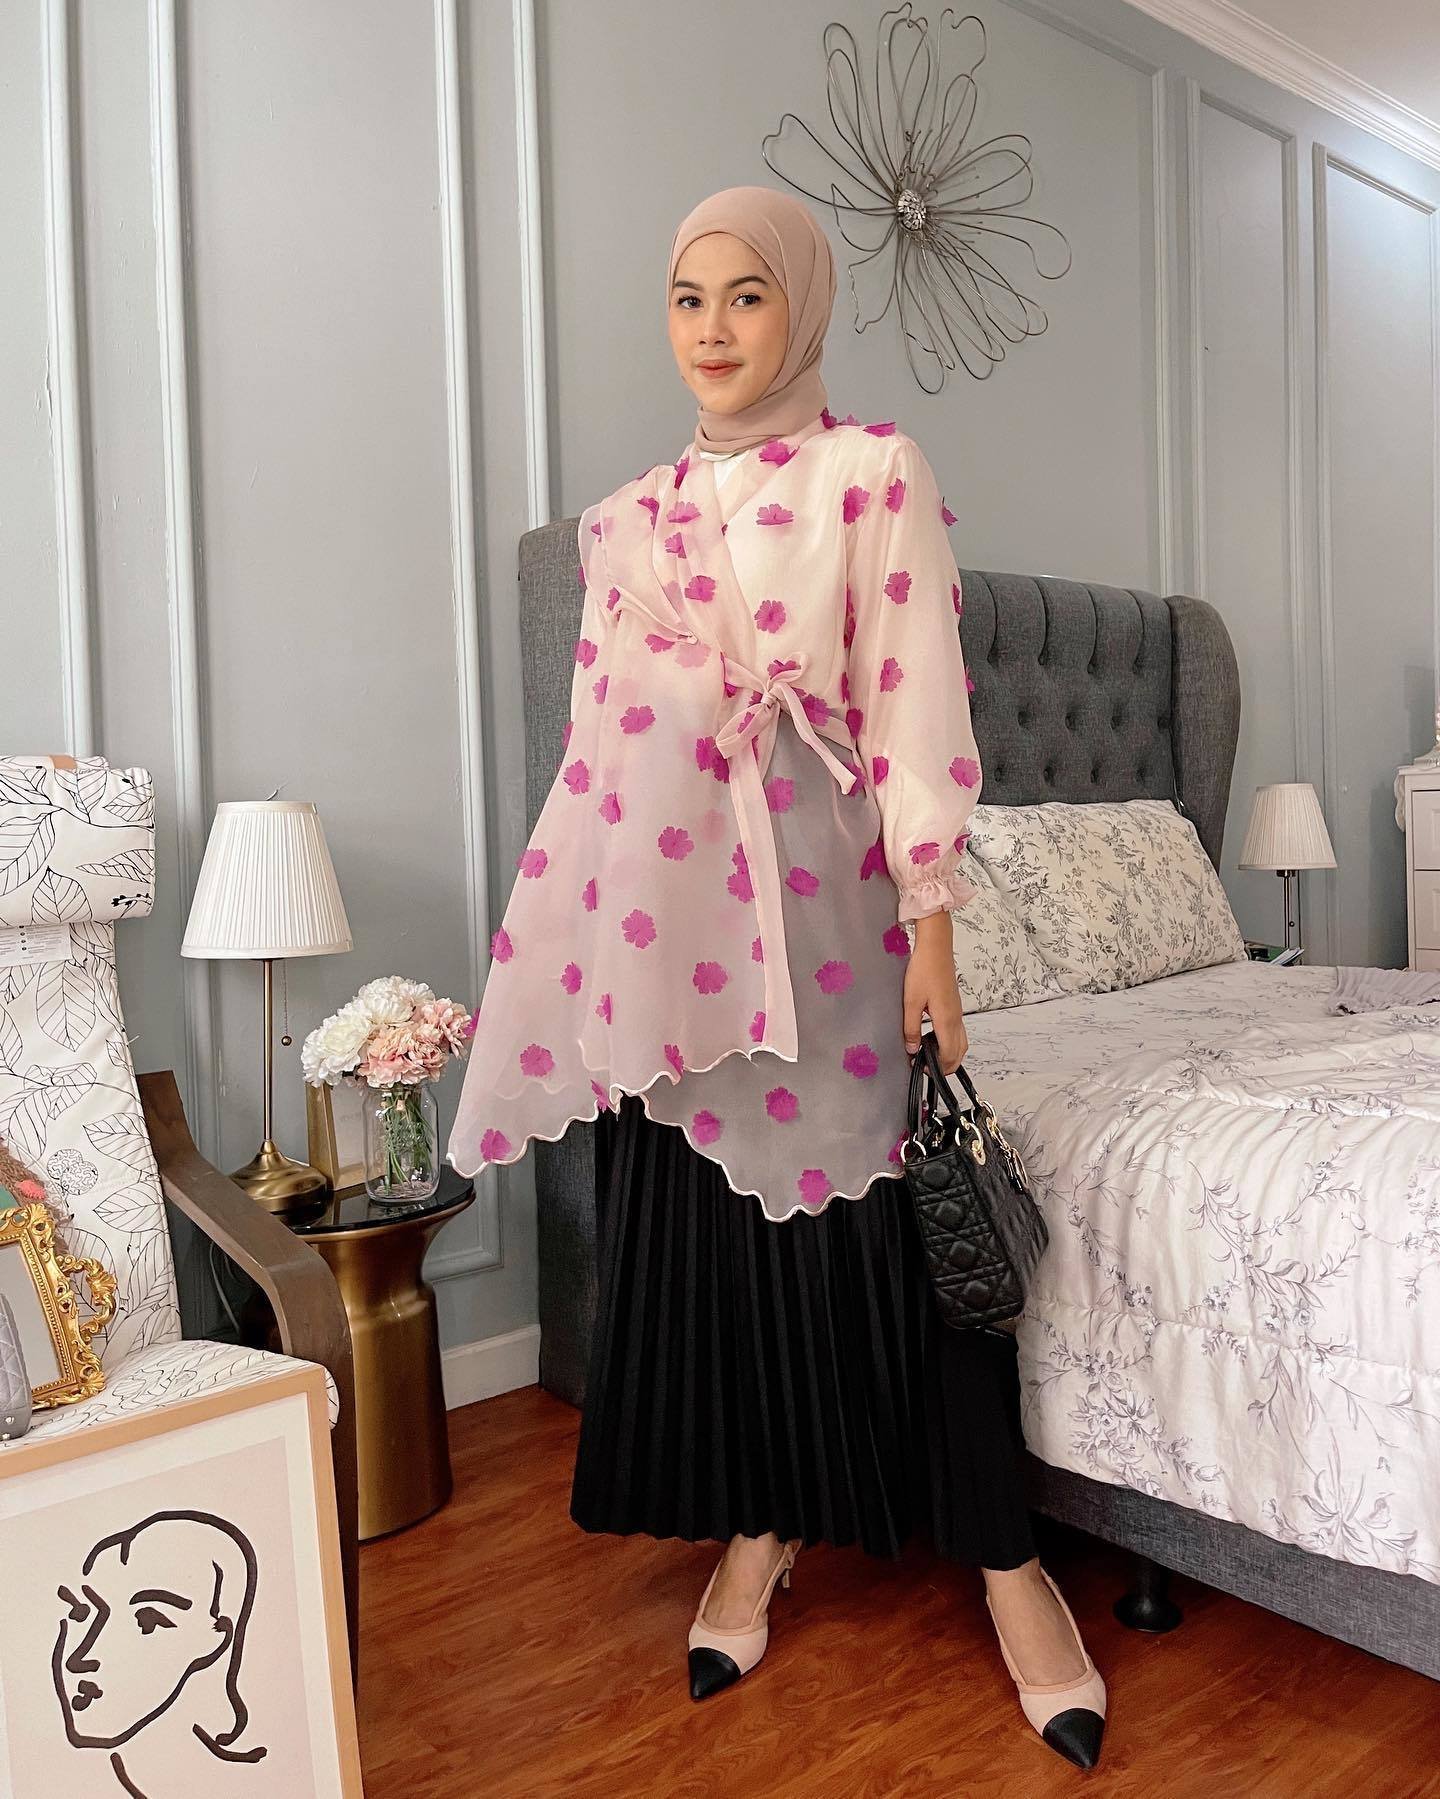 Wanita Indonesia mengenakan hijab warna nude yang dipadukan dengan baju berbahan organza warna pink yang mewah.